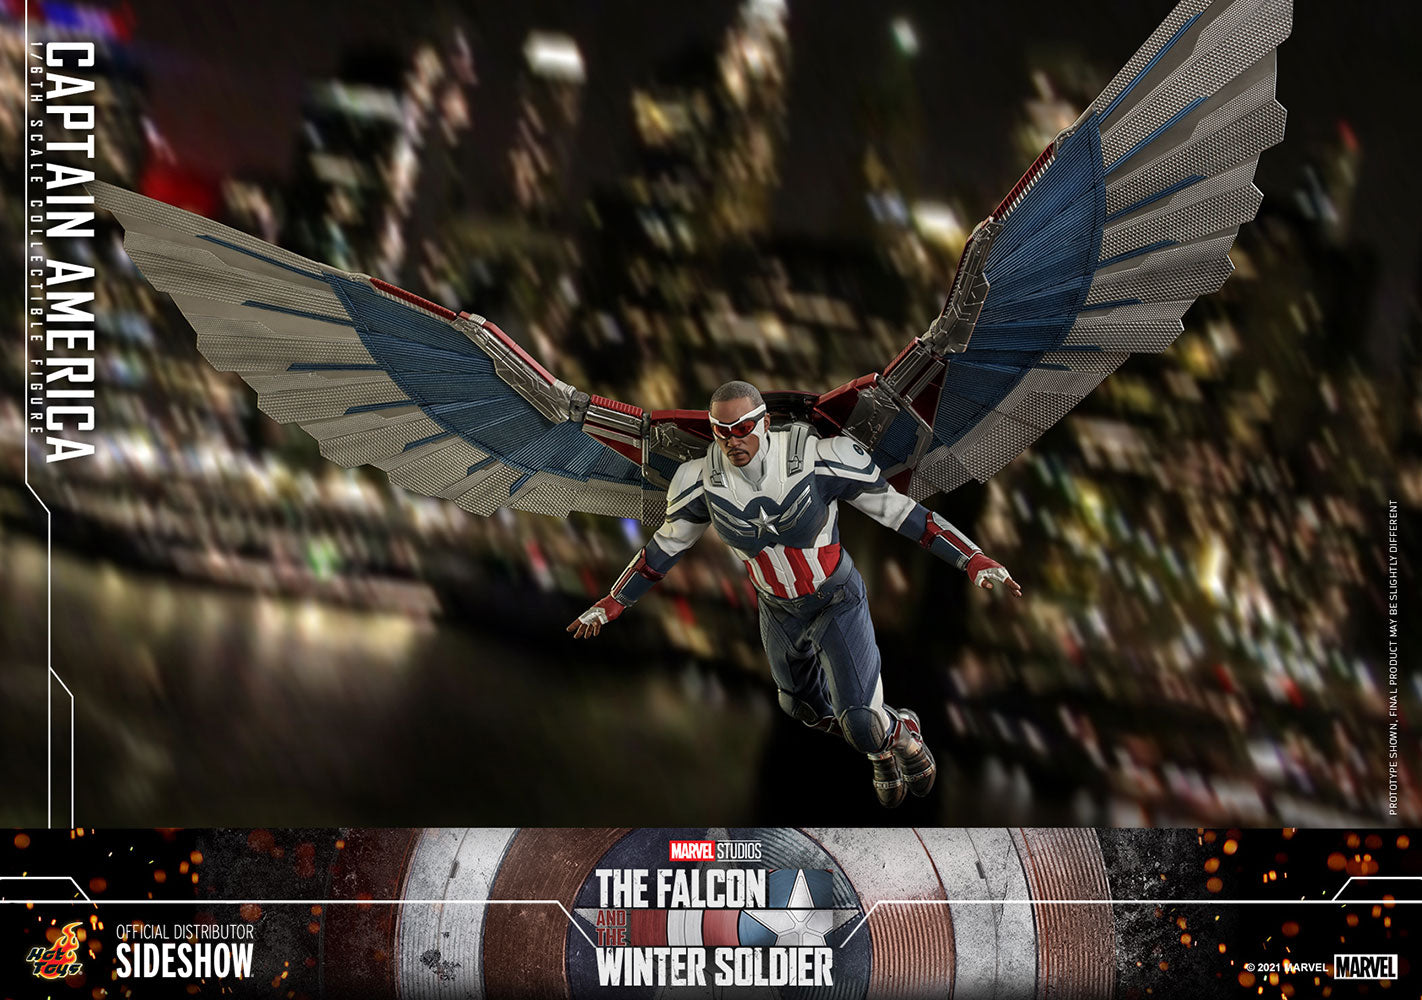 Hot Toys Marvel: Falcon y Winter Soldier - Captain America Falcon Escala 1/6